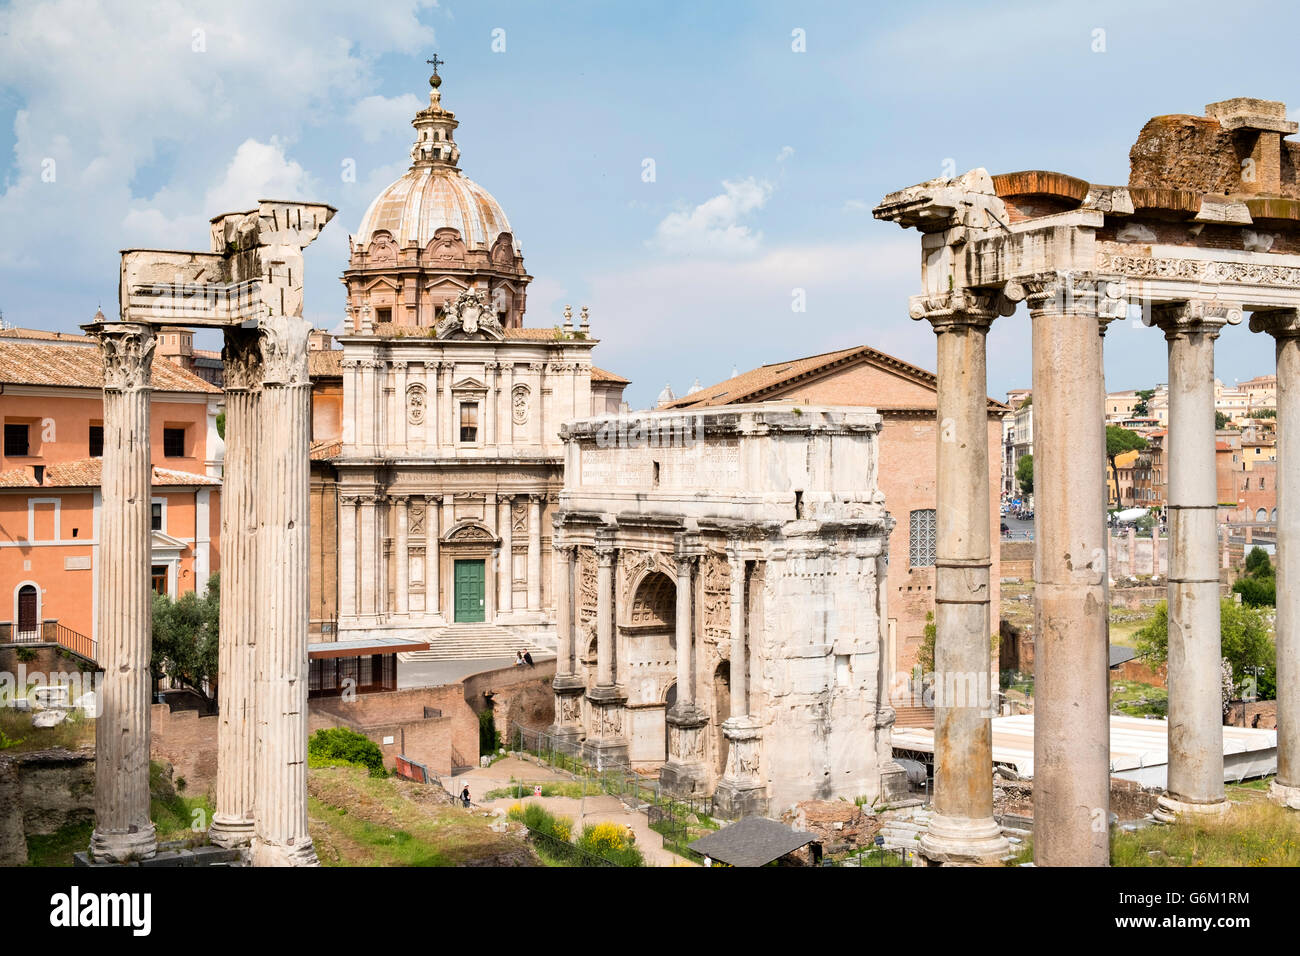 Vista del Foro romano con columnas en ruinas del Templo de Saturno en el derecho en Roma, Italia Foto de stock